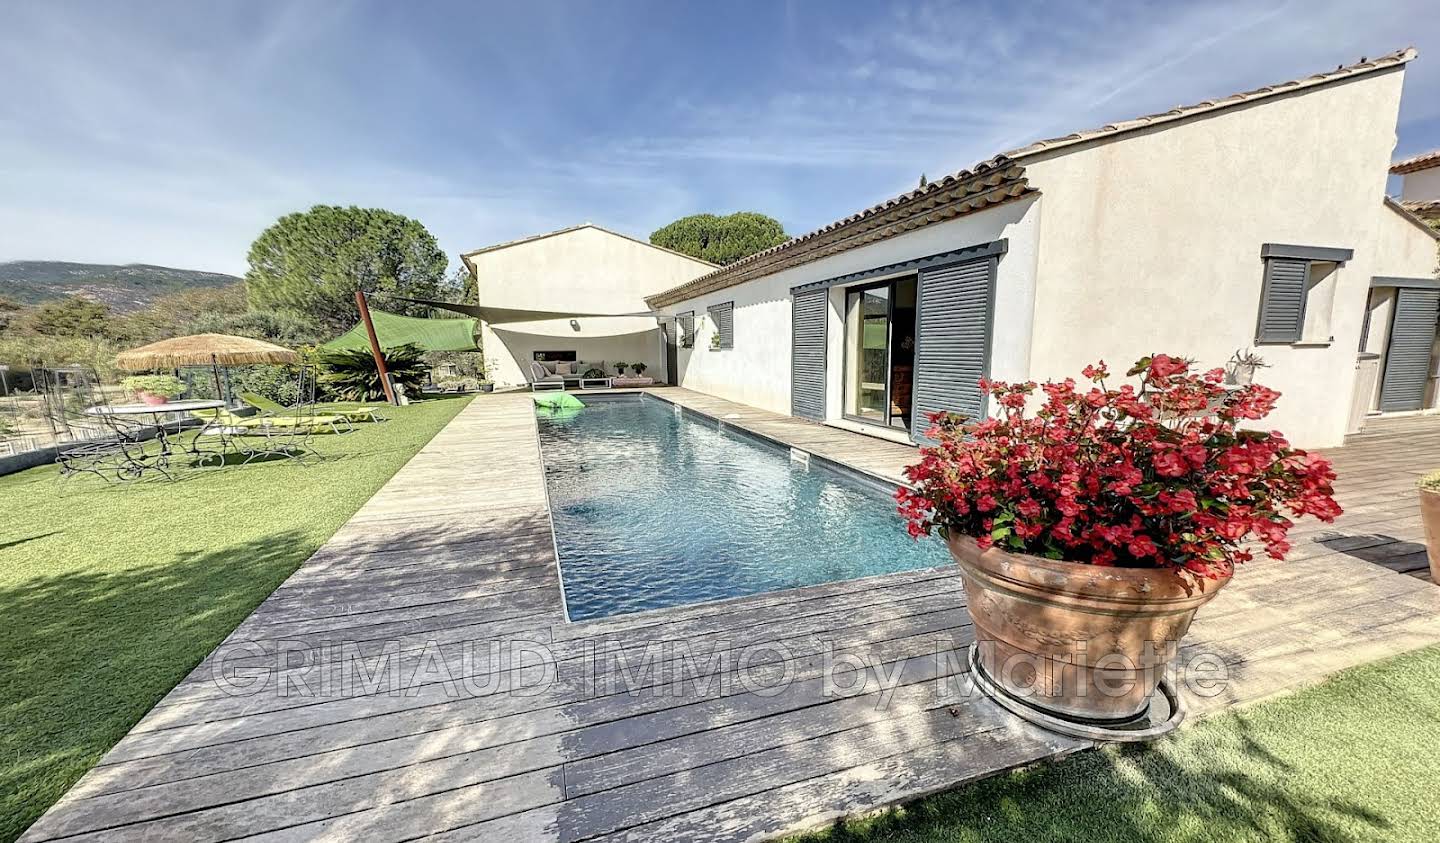 Villa with pool and terrace Plan-de-la-Tour